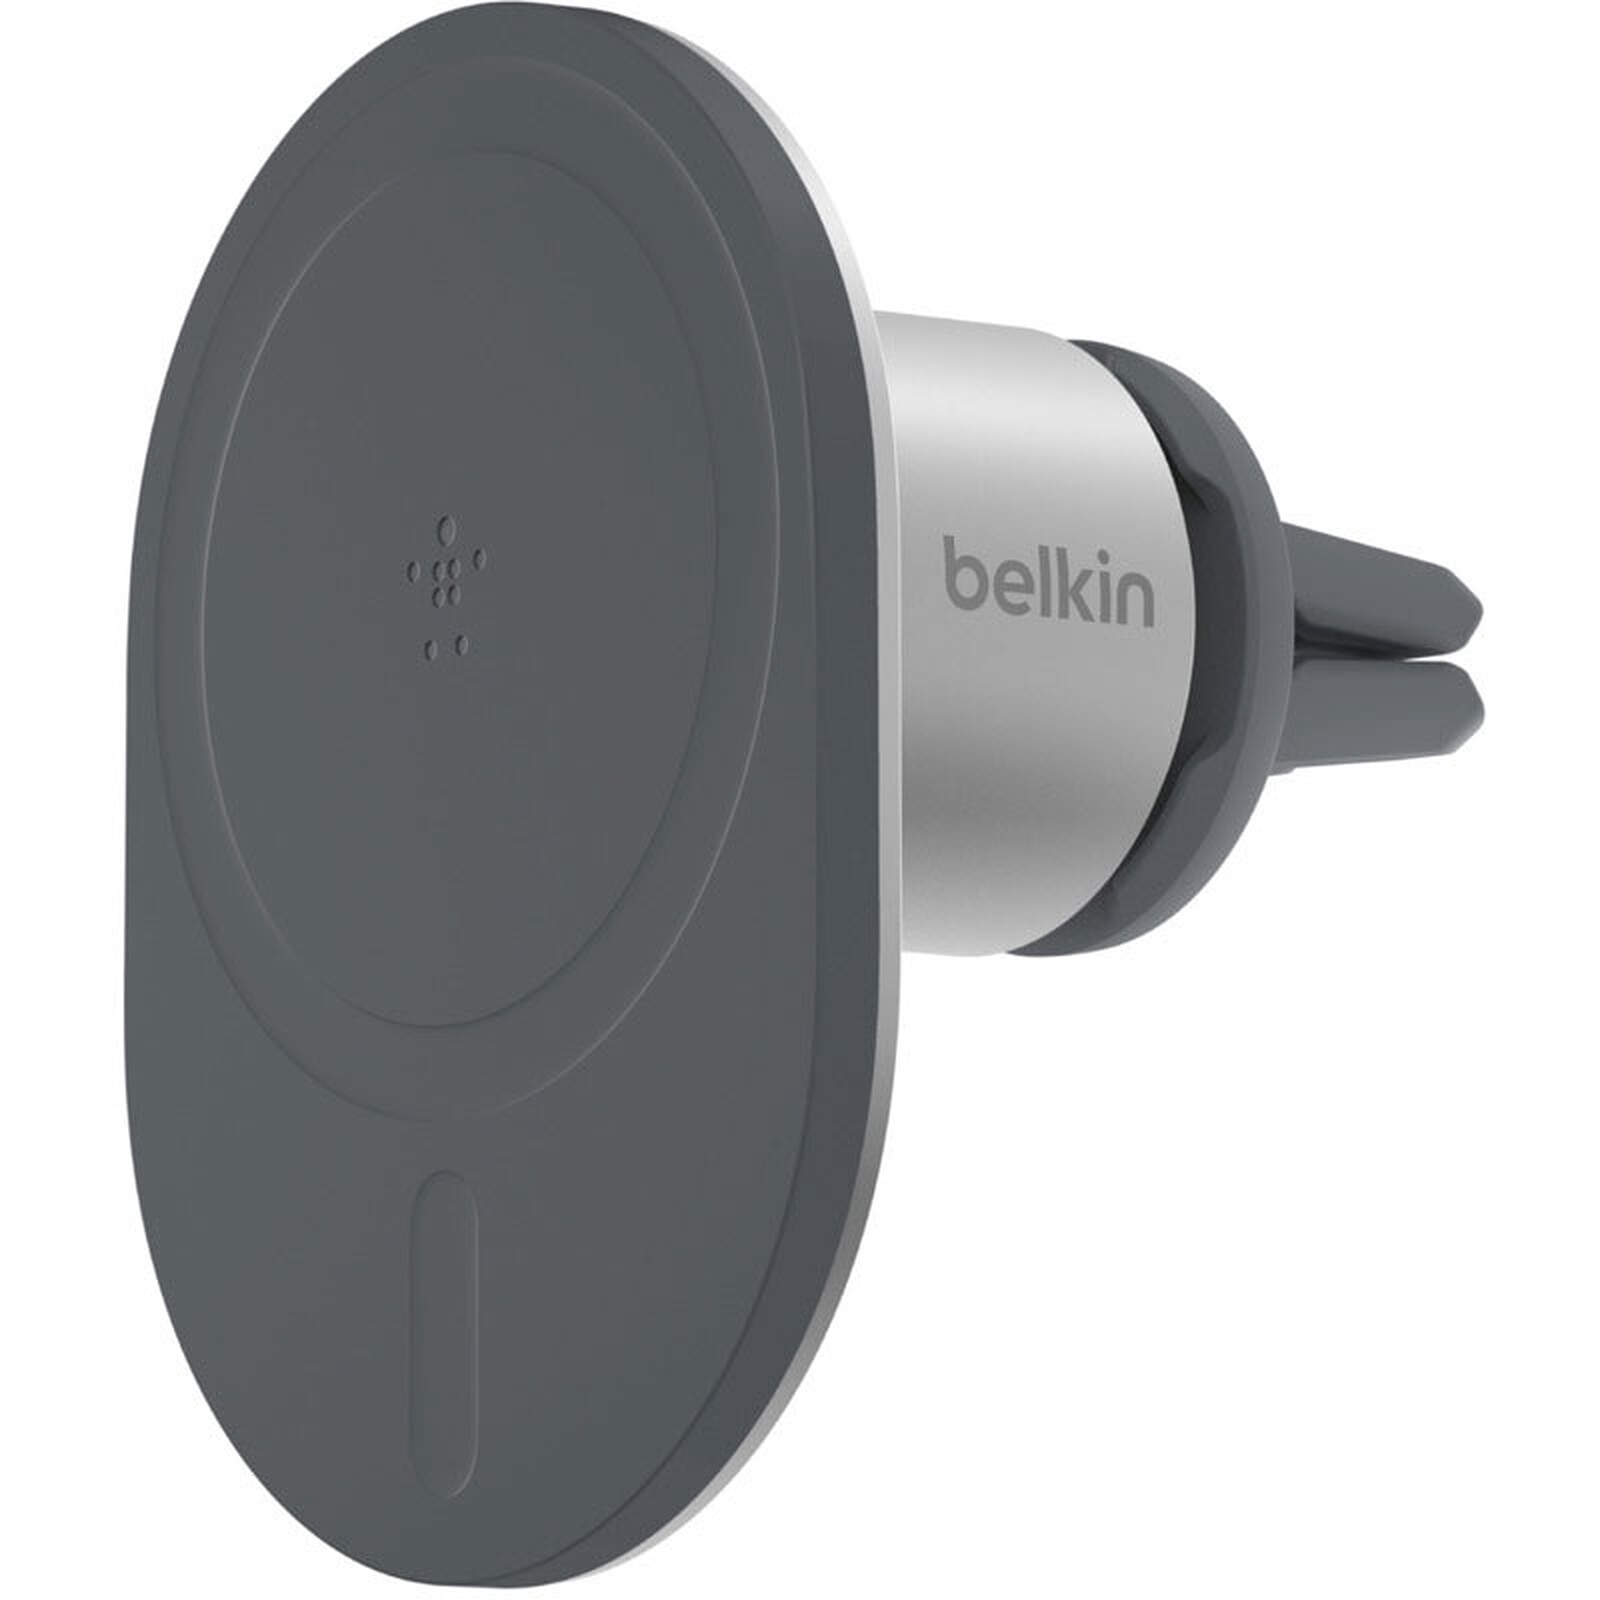 Aperçu du support PRO compatible MagSafe de Belkin pour voiture